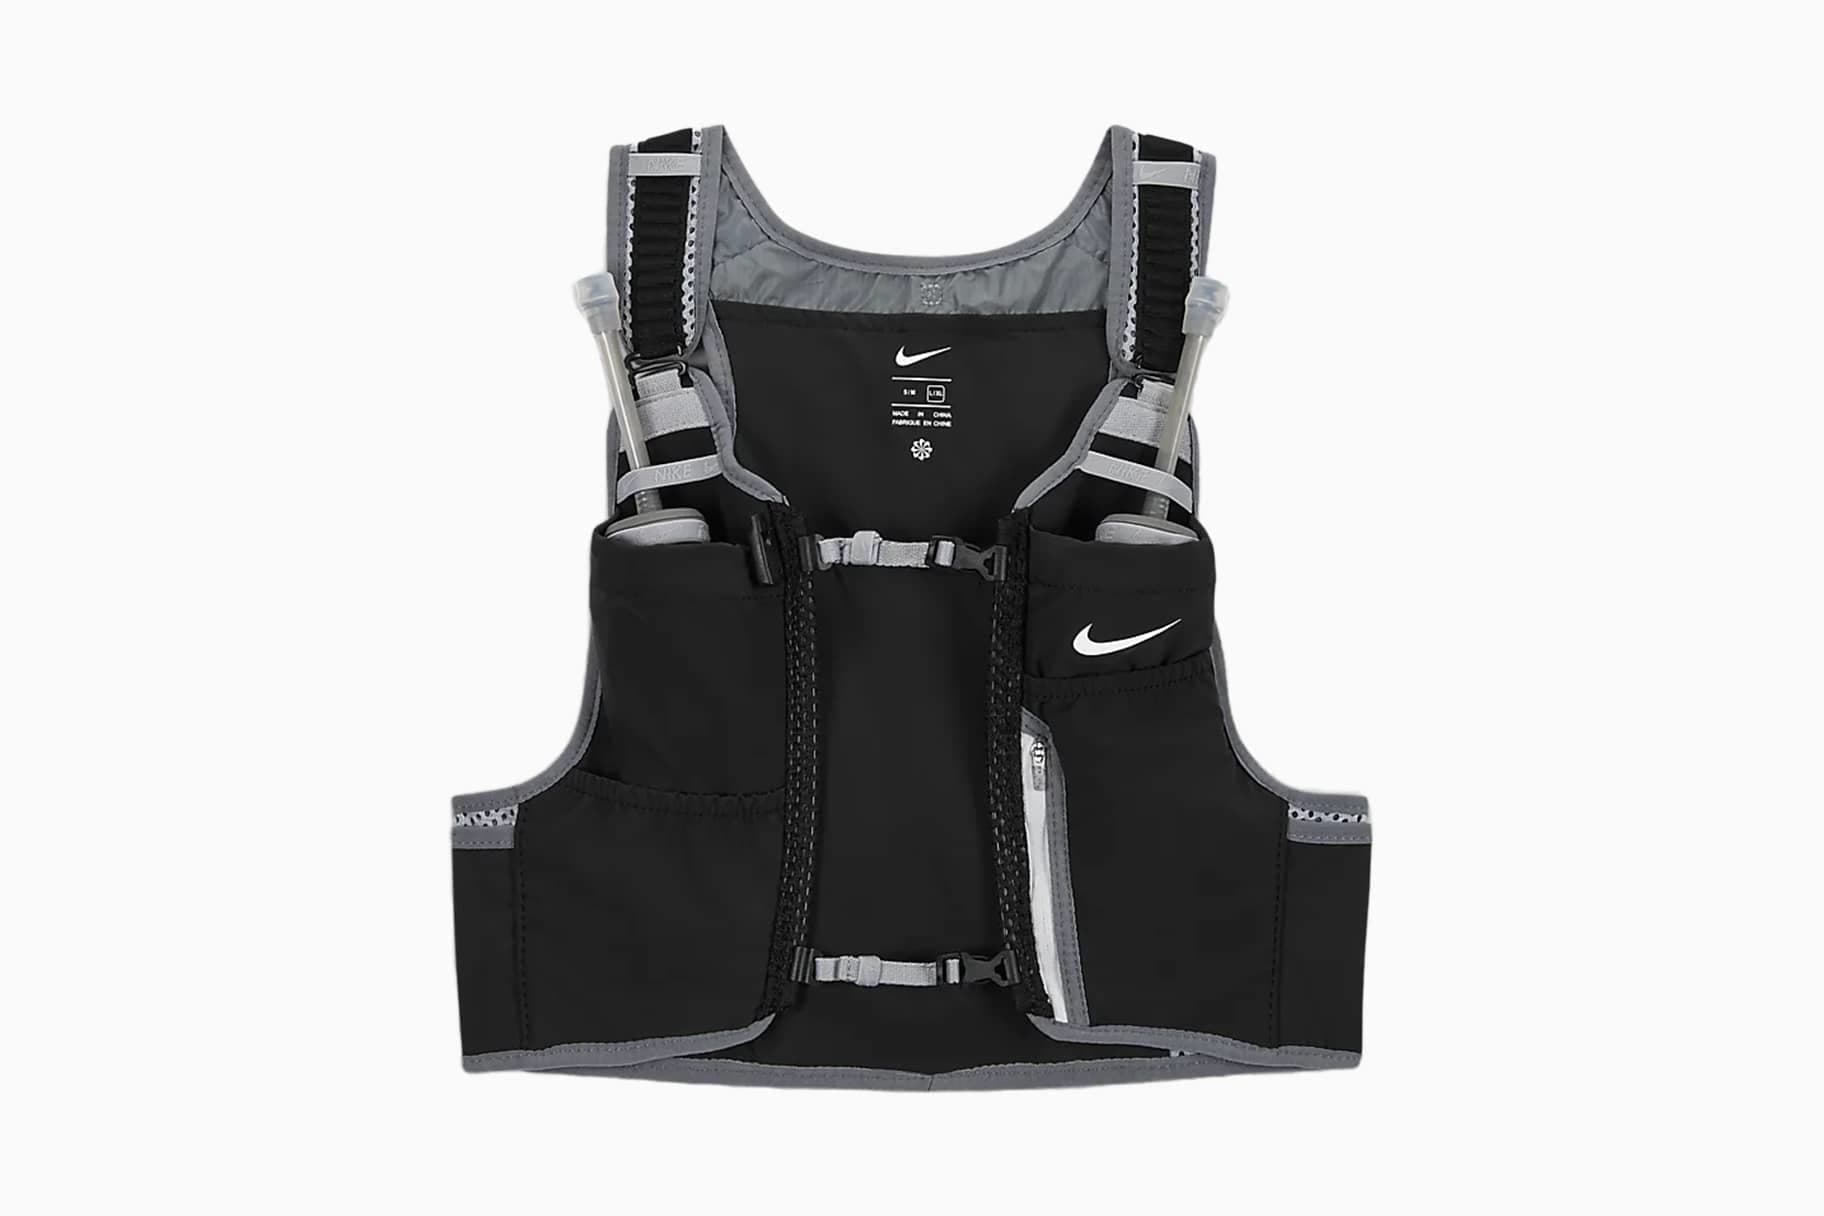 Mejores chalecos y cinturones hidratación para running de Nike. Nike